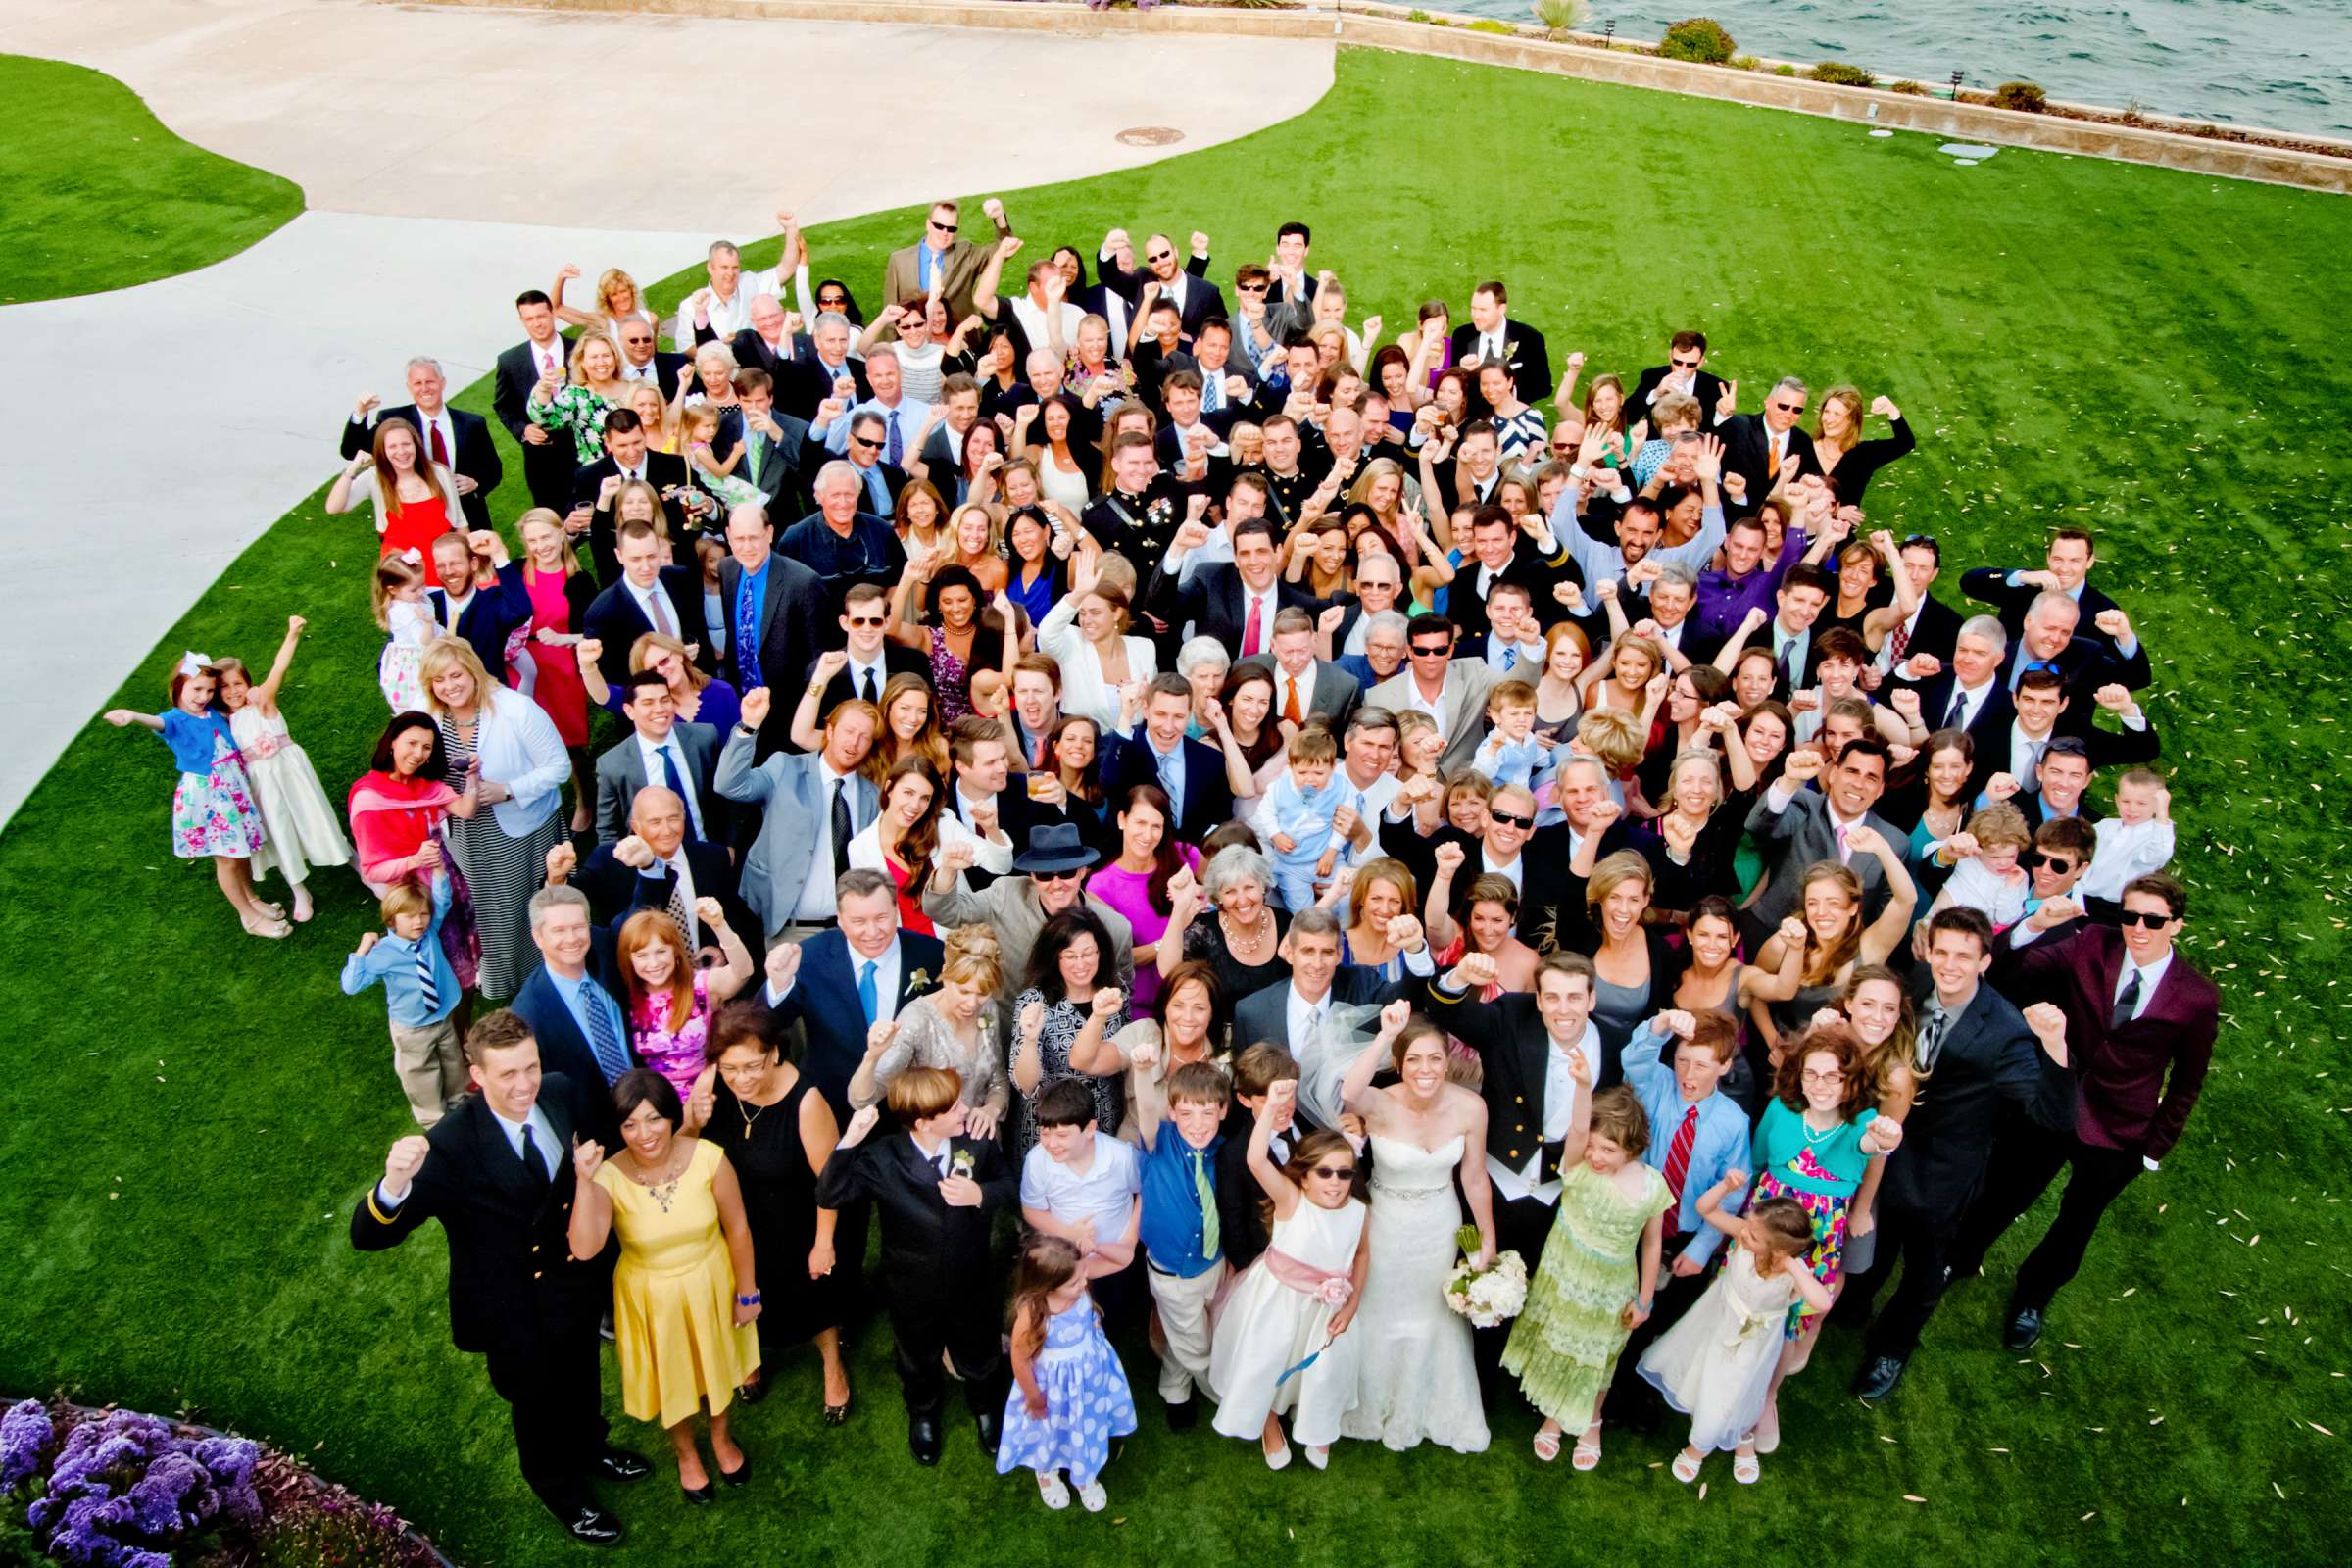 Admiral Kidd Club Wedding coordinated by I Do Weddings, Ashley and Rhett Wedding Photo #358486 by True Photography